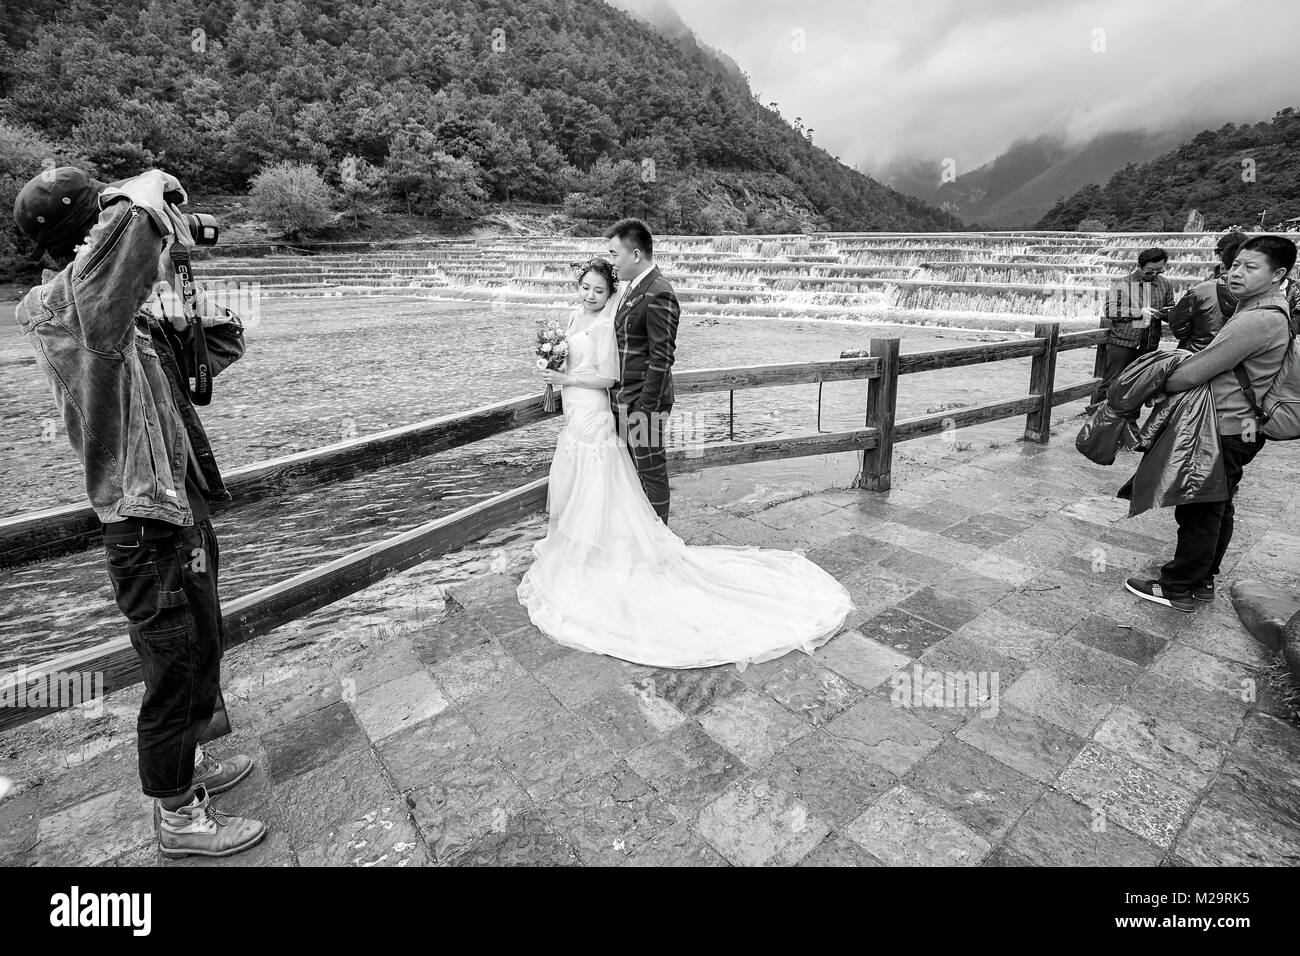 Lijiang, Chine - le 22 septembre 2017 : séance photo couple de mariage à l'eau blanc dans la rivière de la vallée de la Lune Bleue, l'une des destinations de voyage haut de la Chine Banque D'Images